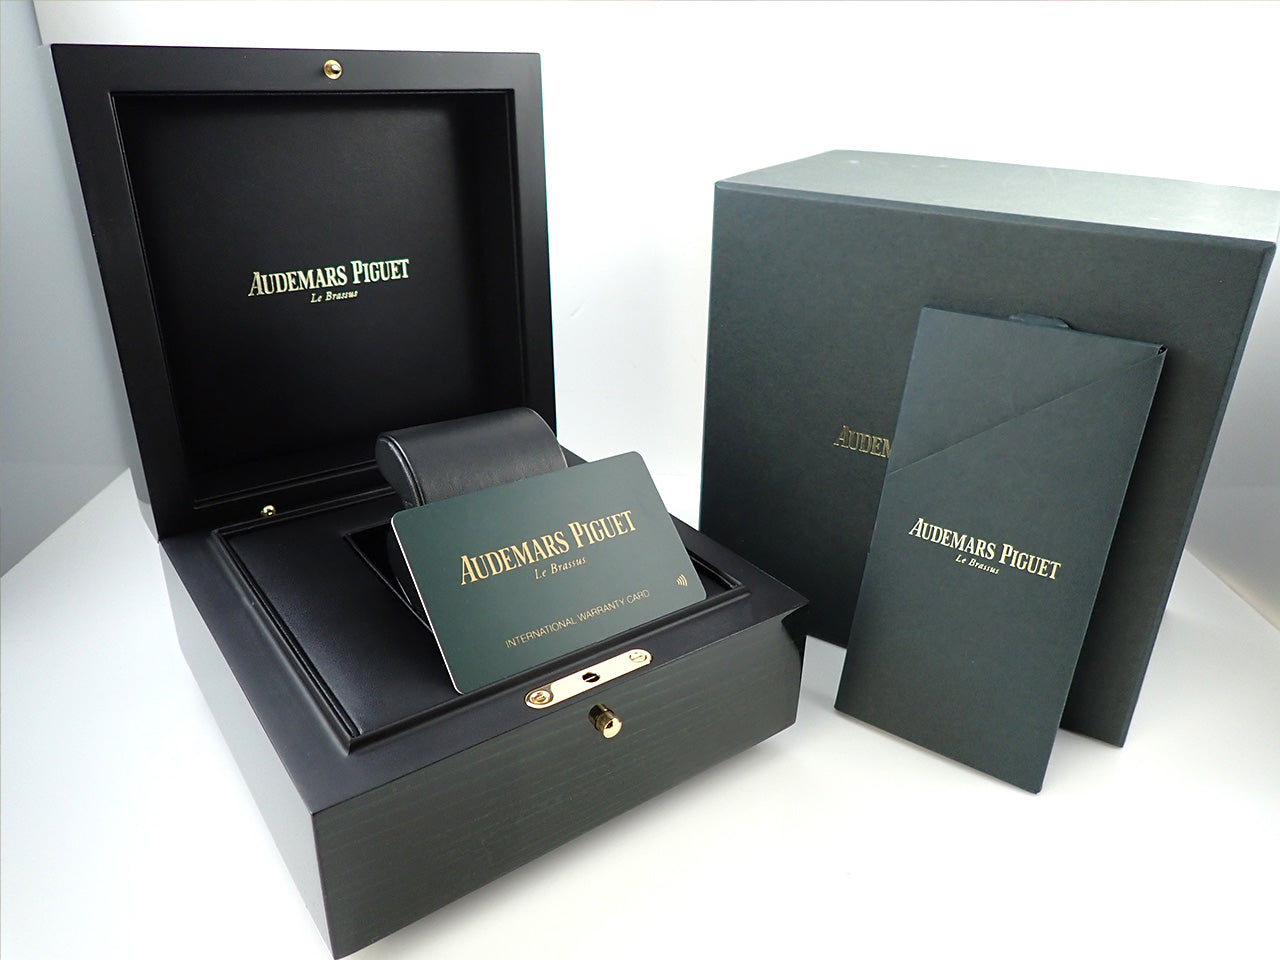 Audemars Piguet Royal Oak Offshore Chronograph &lt;Warranty, Box, etc.&gt;